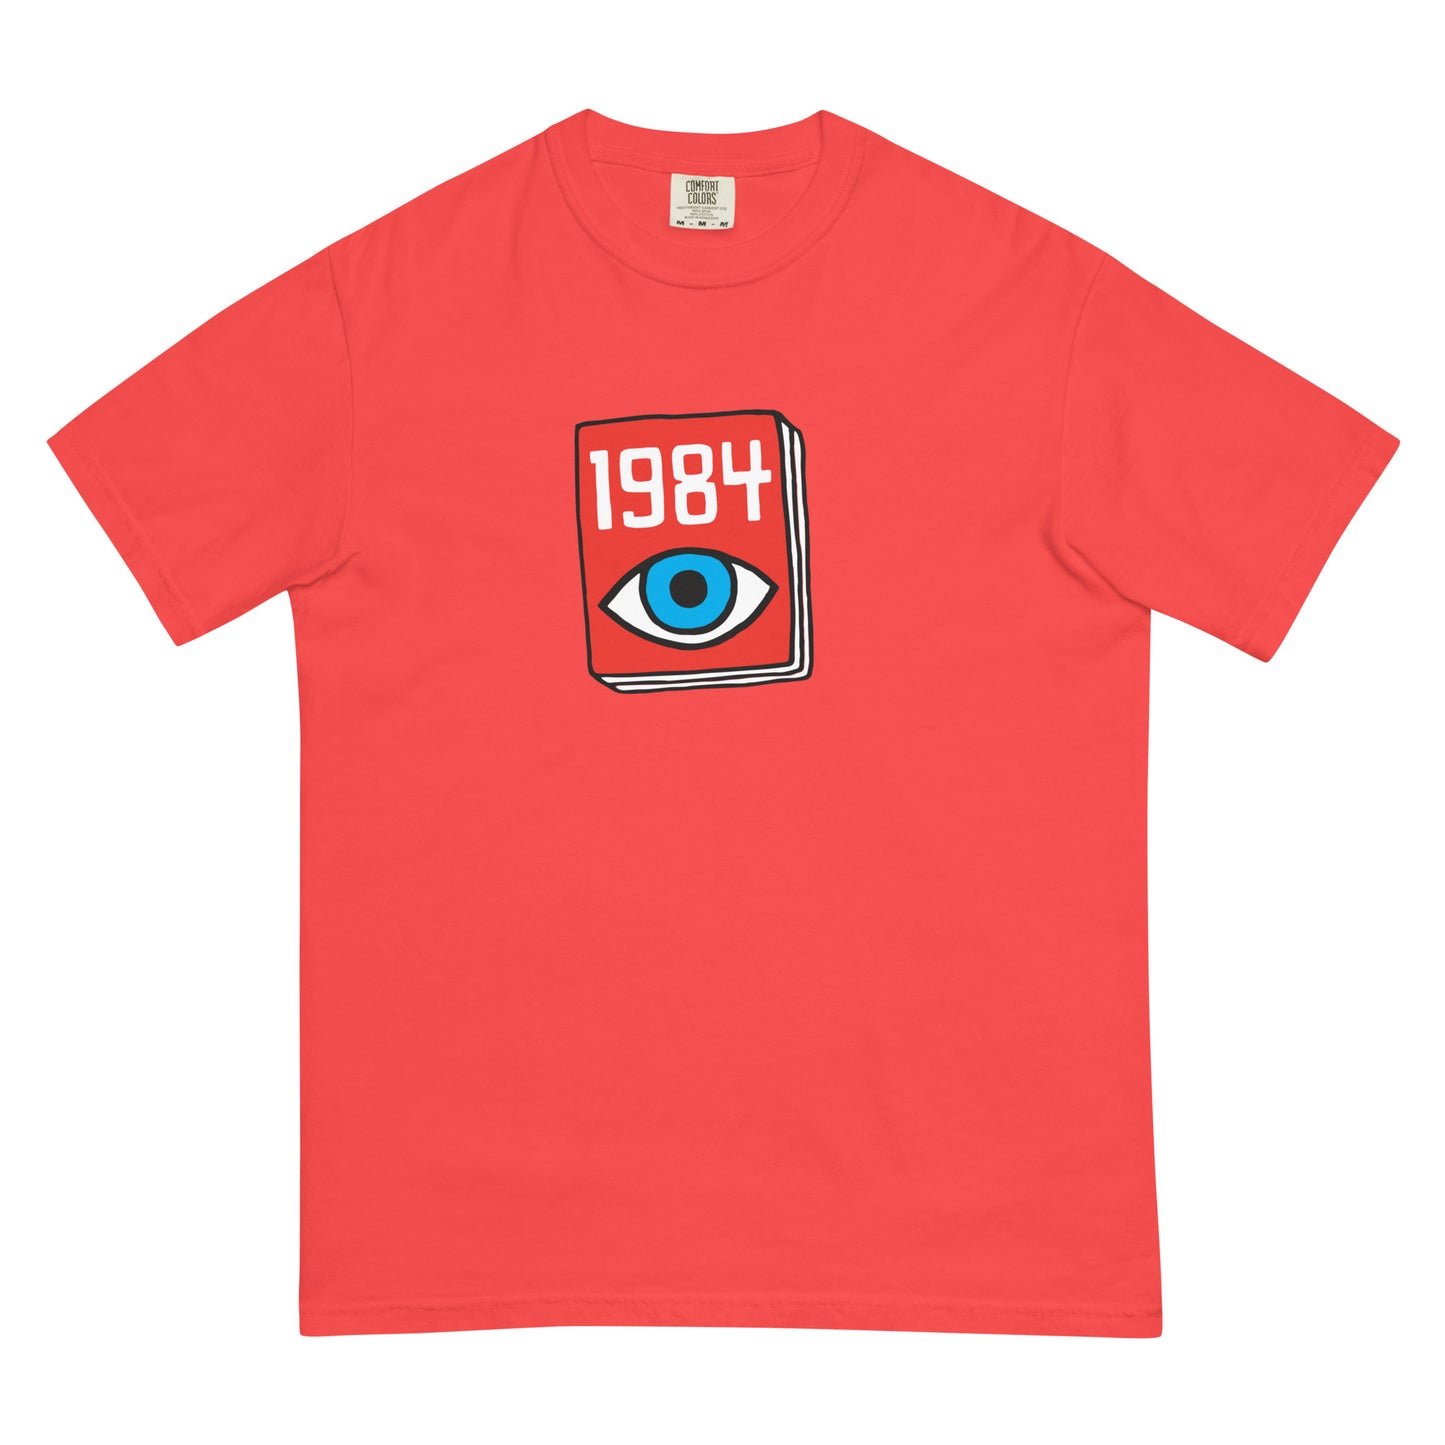 Book shirt: 1984